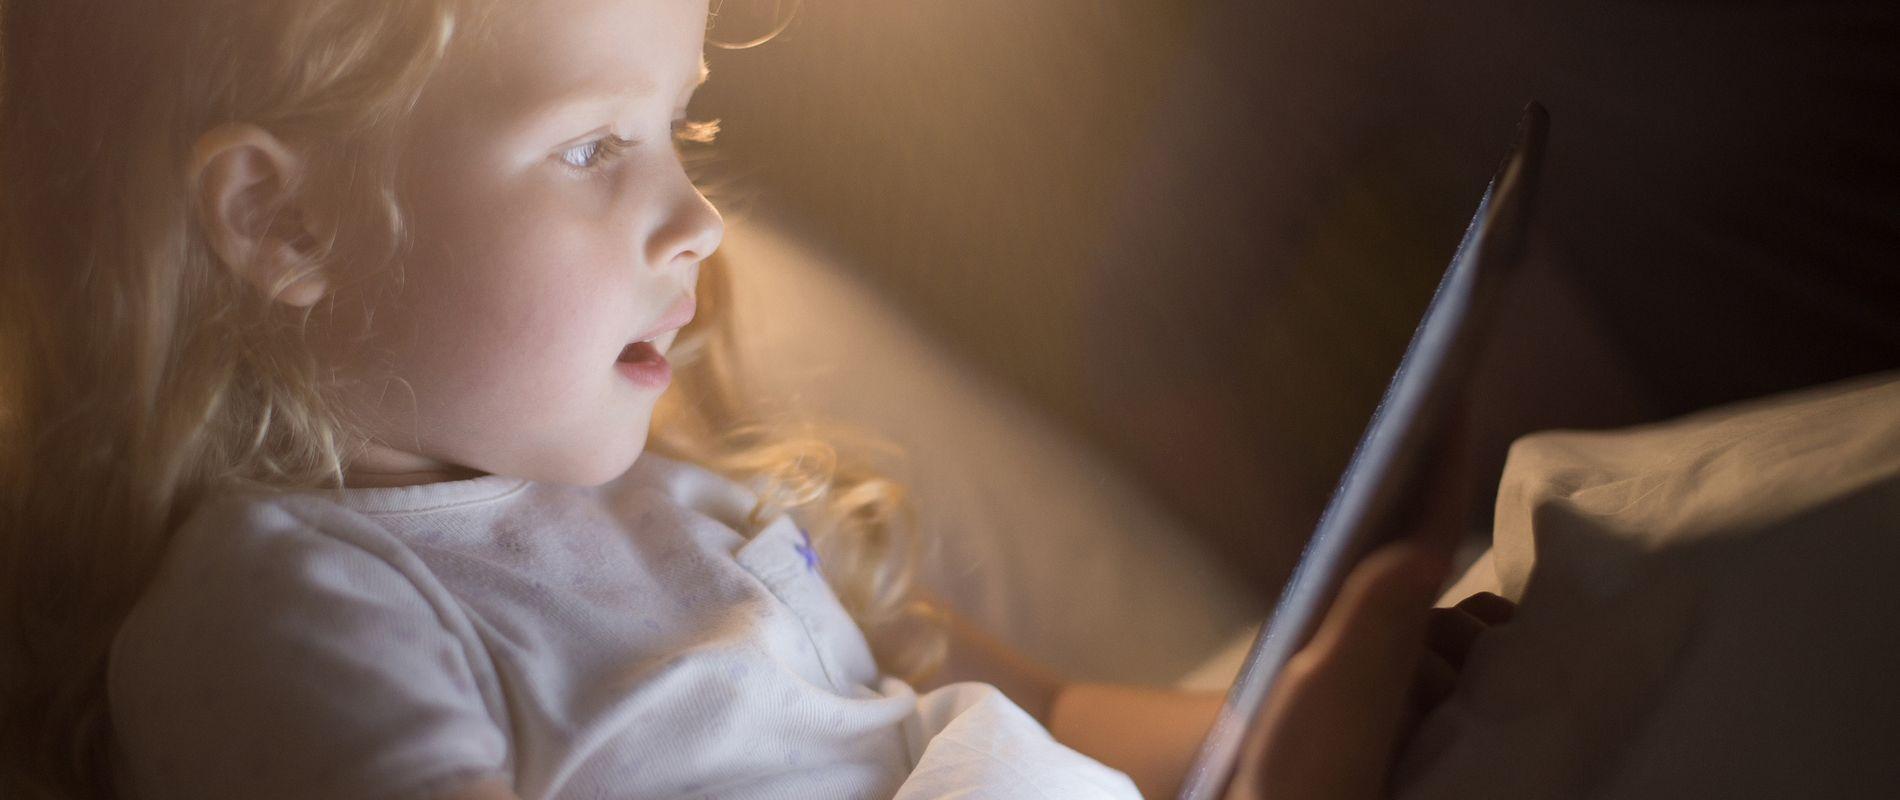 Les écrans perturbent le sommeil, la concentration et l’apprentissage du langage chez les enfants. 